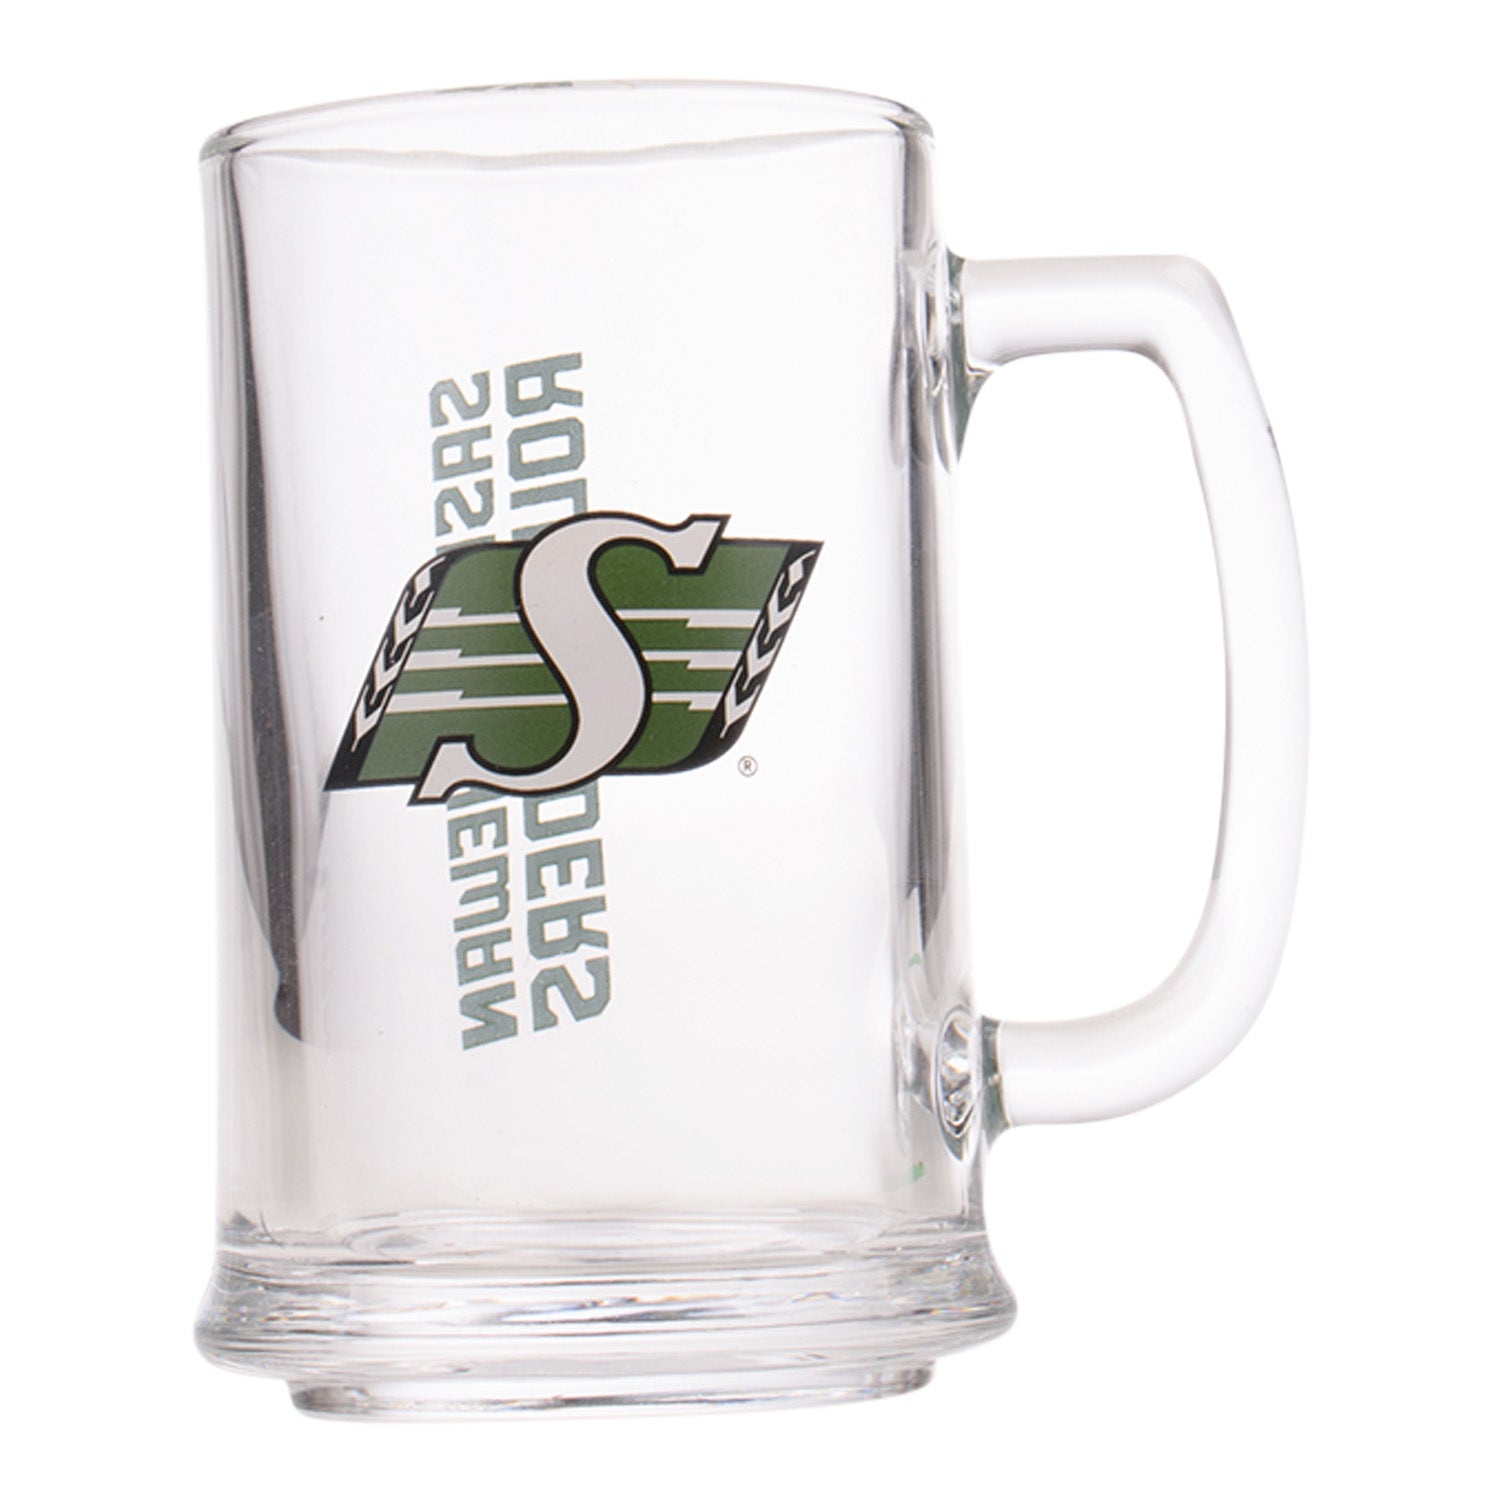 15oz Glass Sport Mug With Wordmark